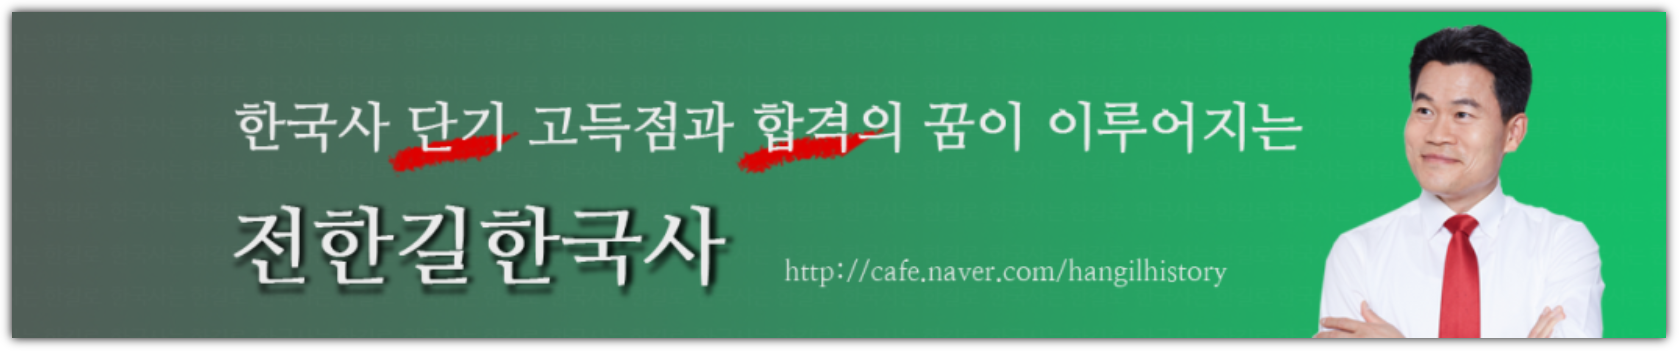 전한길-한국사-카페-배너